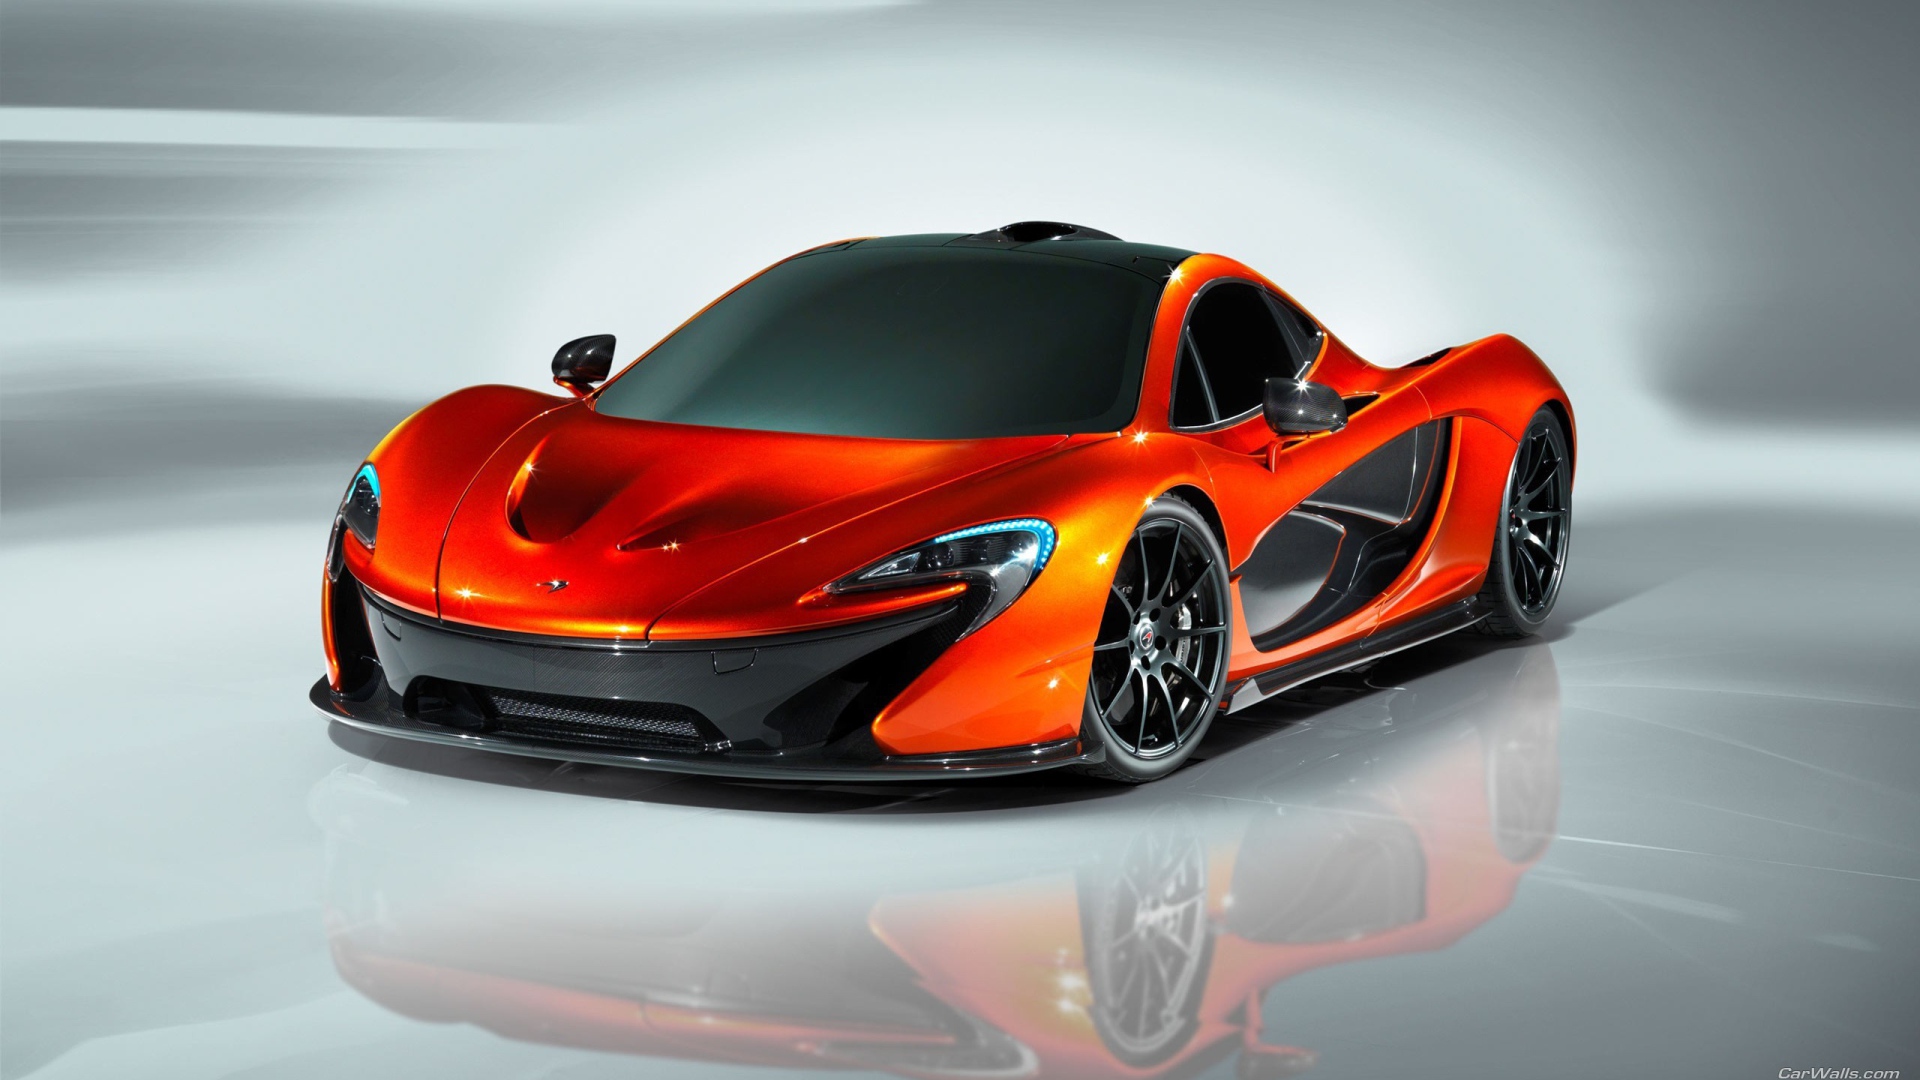 Оранжевый McLaren P1 на зеркальной поверхности